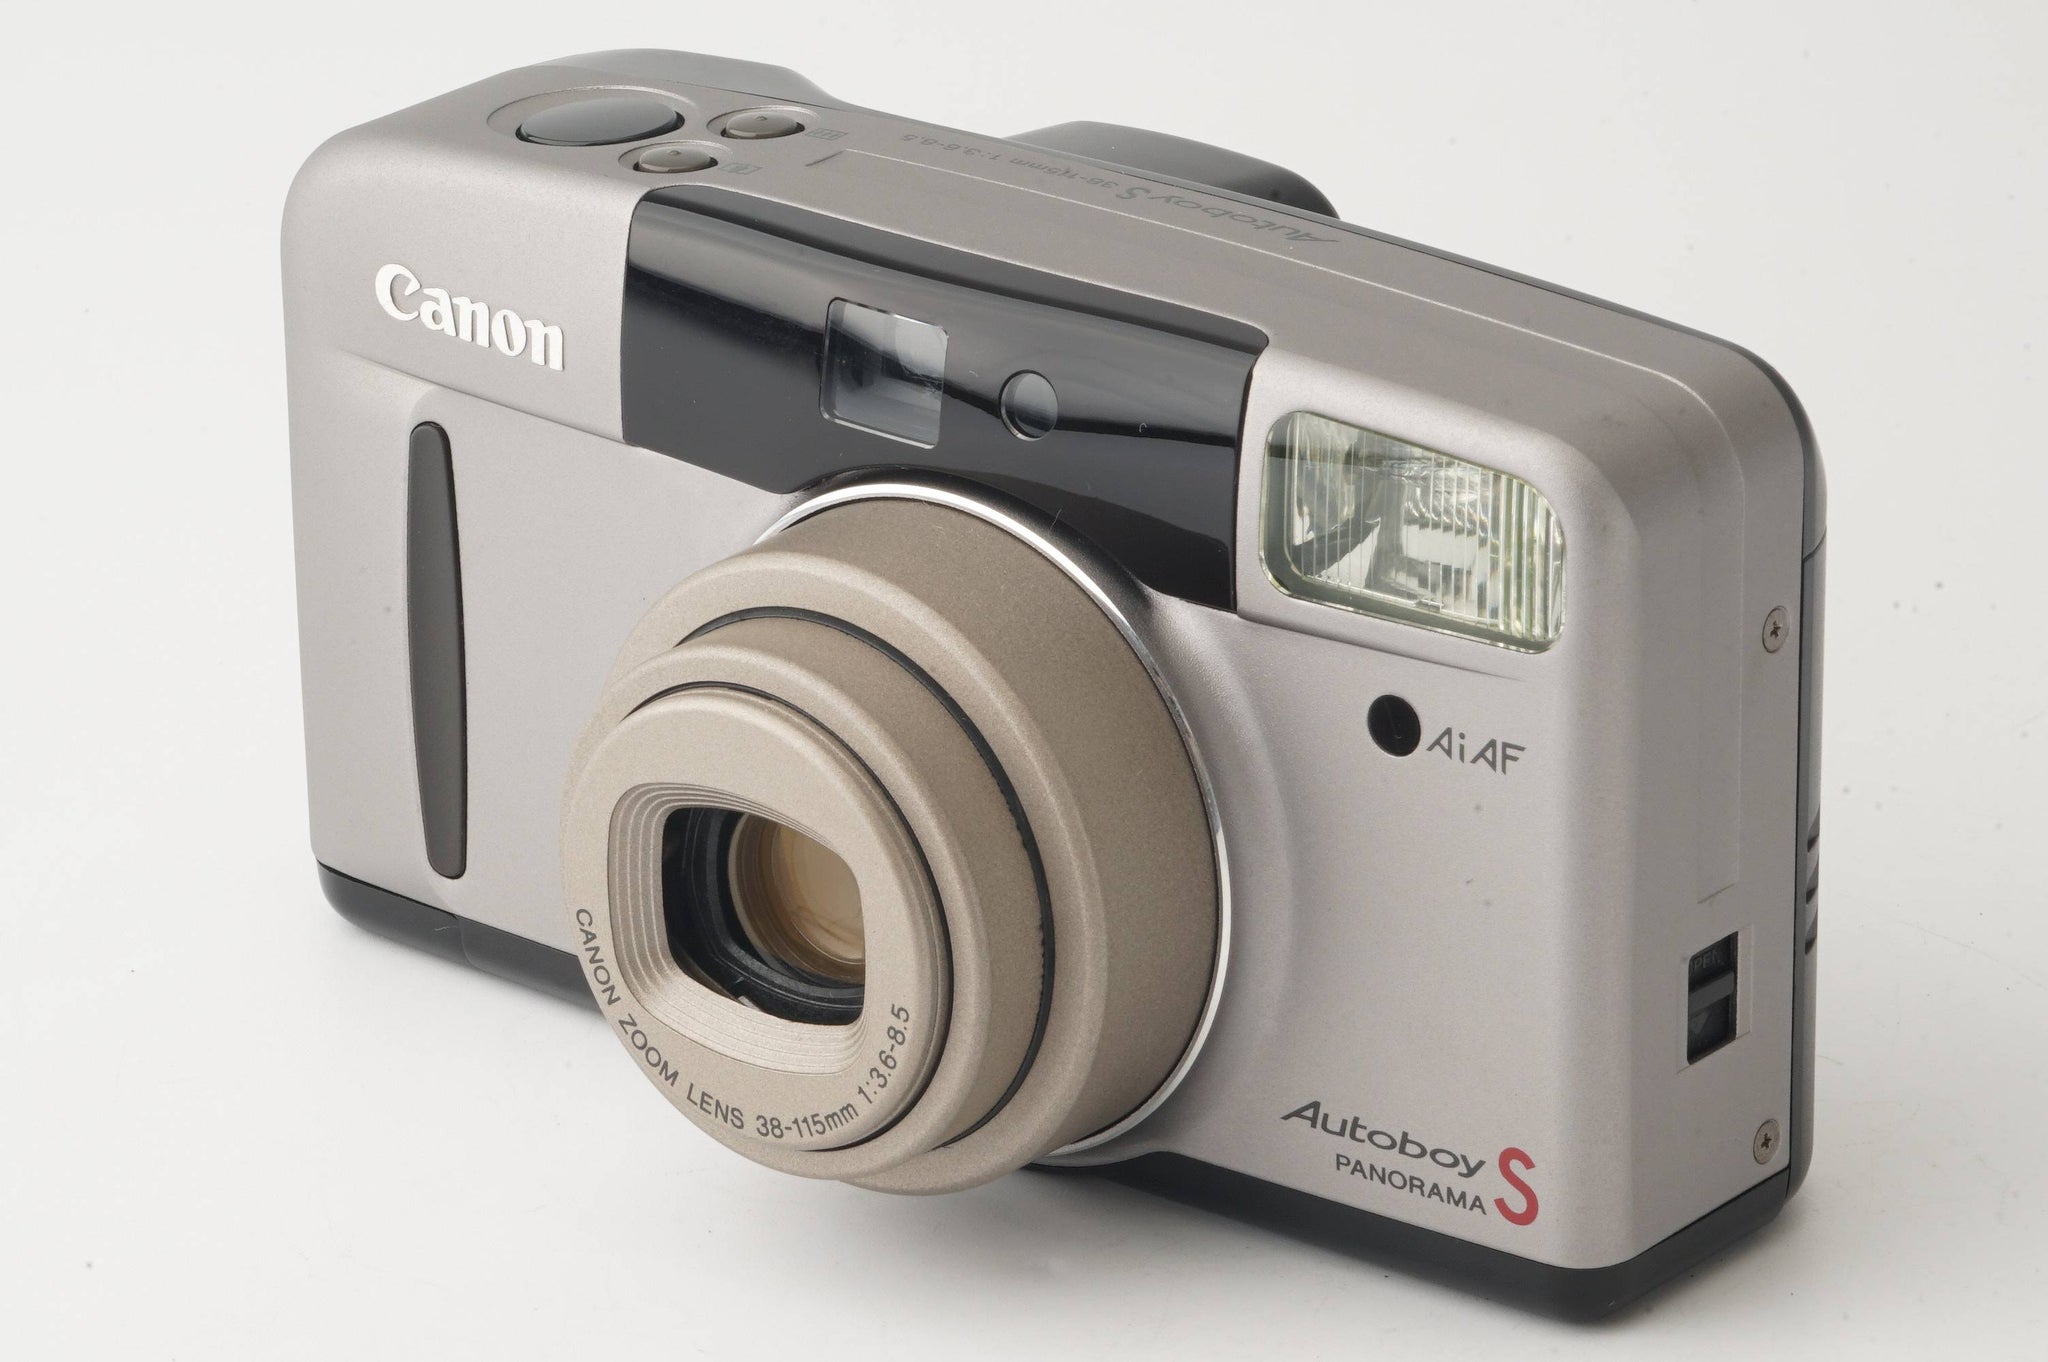 キヤノン Canon Autoboy S PANORAMA ZOOM 38-115mm F3.6-8.5 – Natural Camera  ナチュラルカメラ